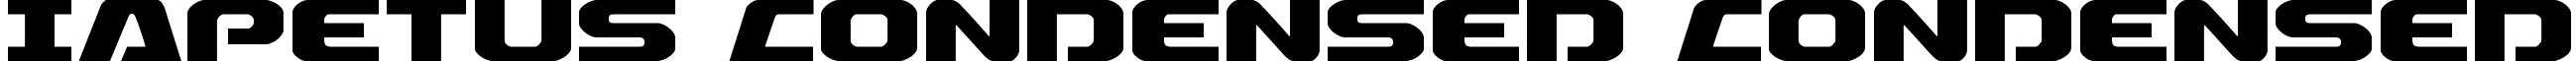 Iapetus Condensed Condensed font - iapetuscond.ttf